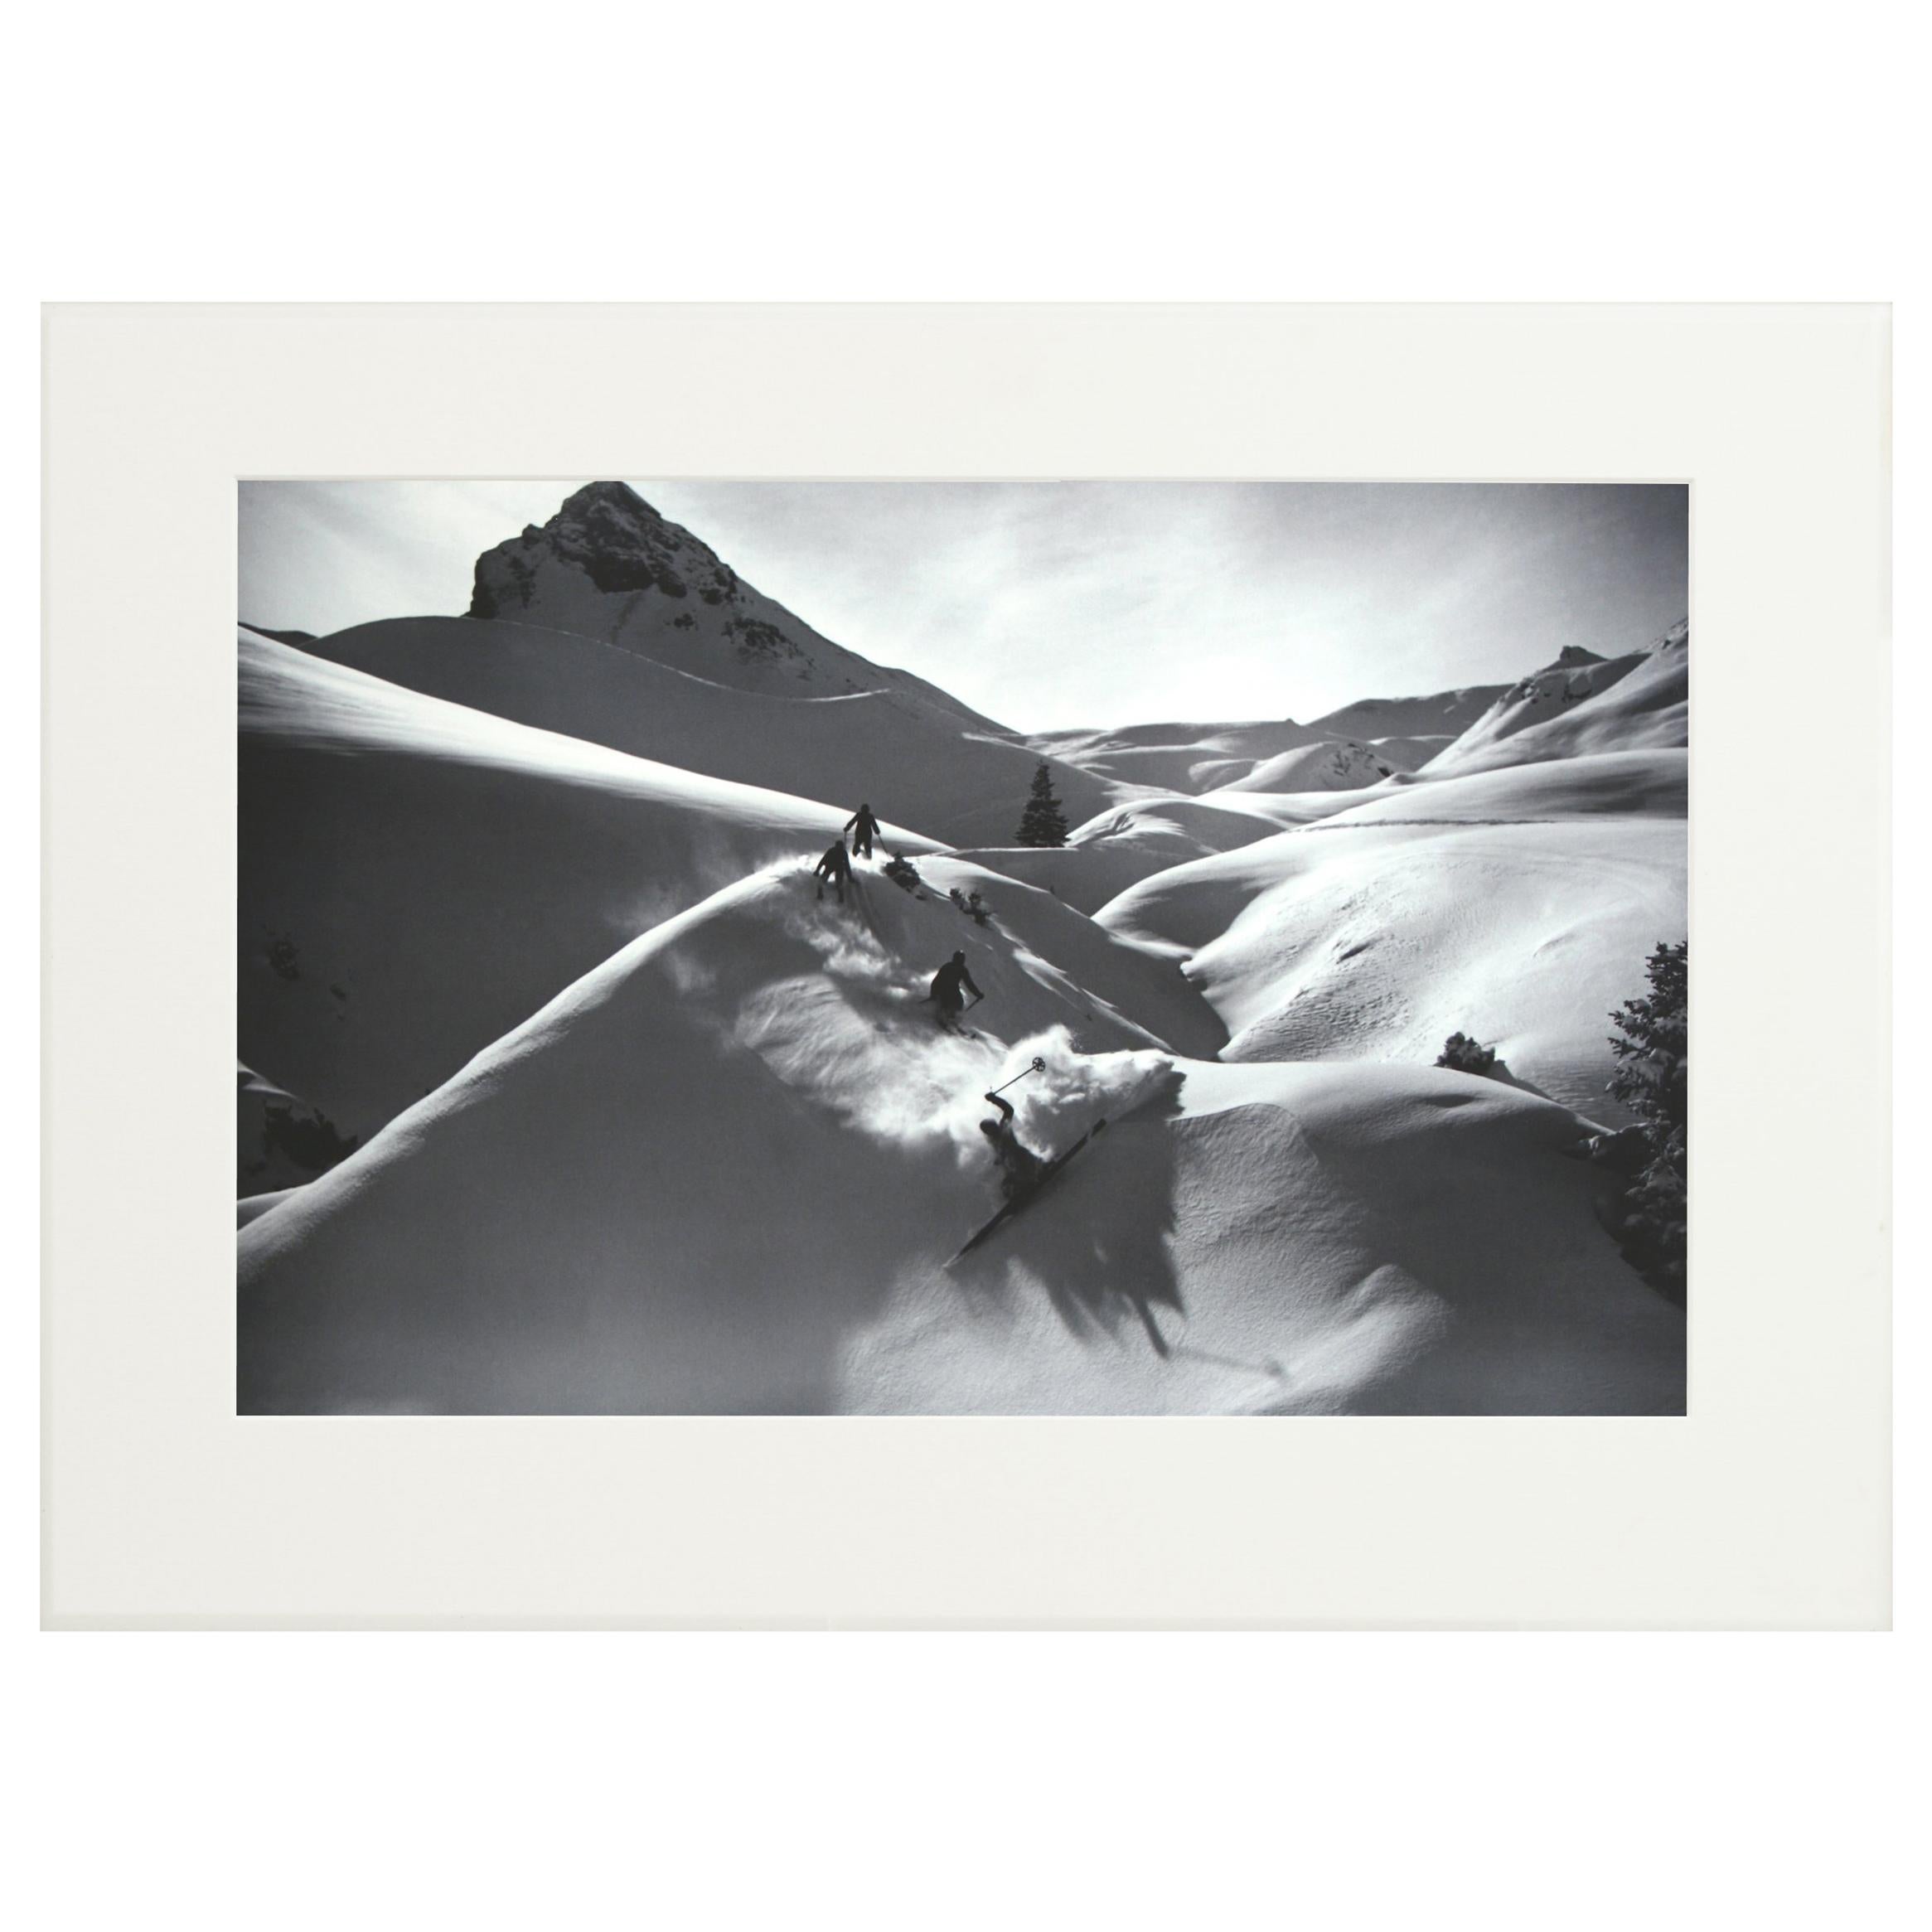 Photographie de ski alpin, « VIRGIN POWDER », tirée d'une photographie originale des années 1930